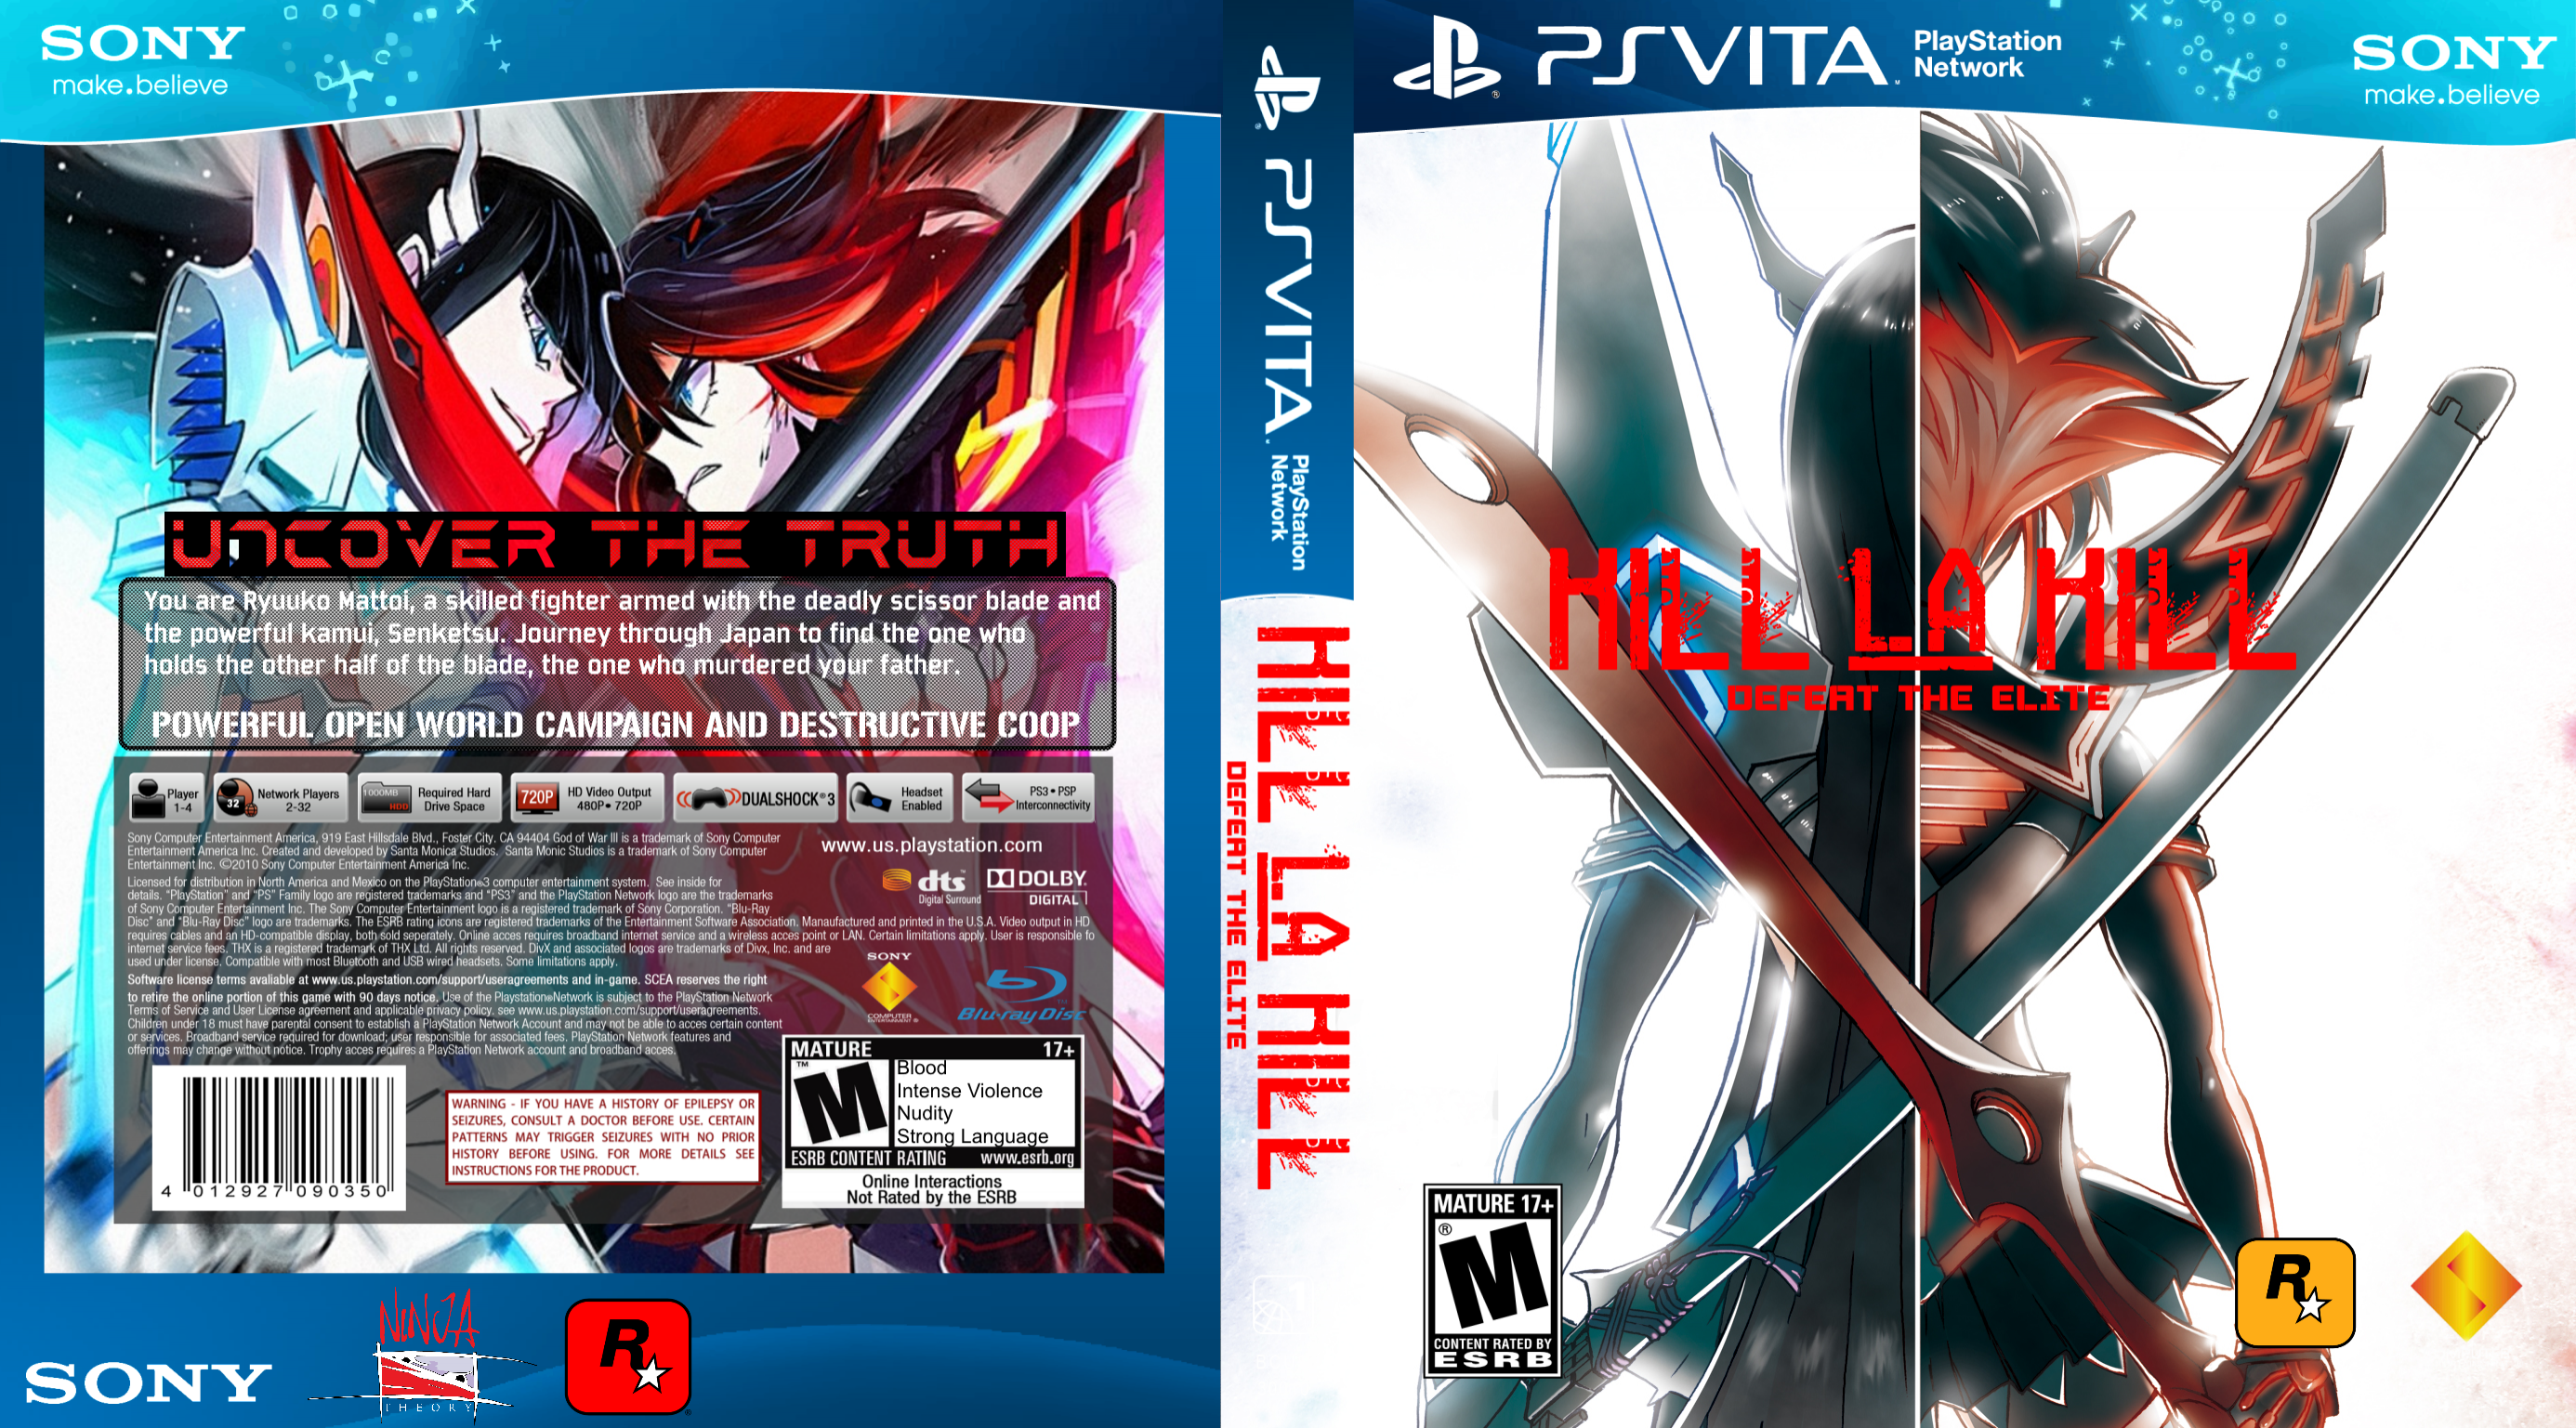 Kill La Kill: Defeat The Elite- PSVita box cover